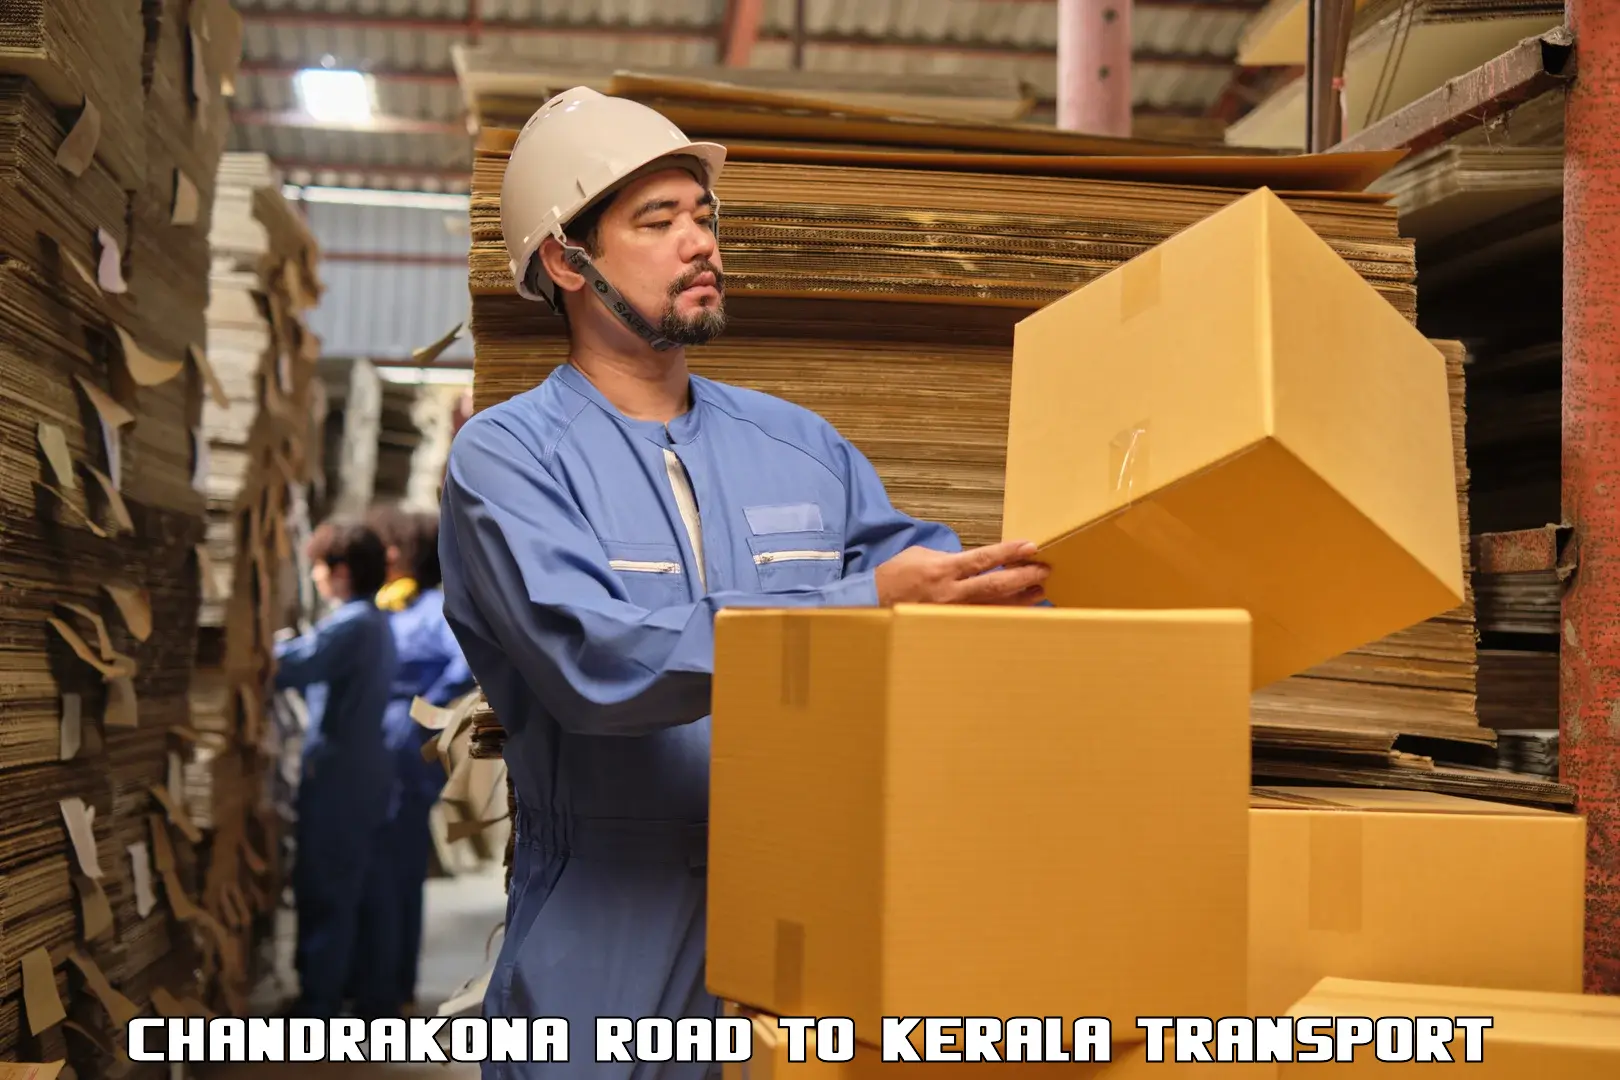 Lorry transport service Chandrakona Road to Kalanjoor